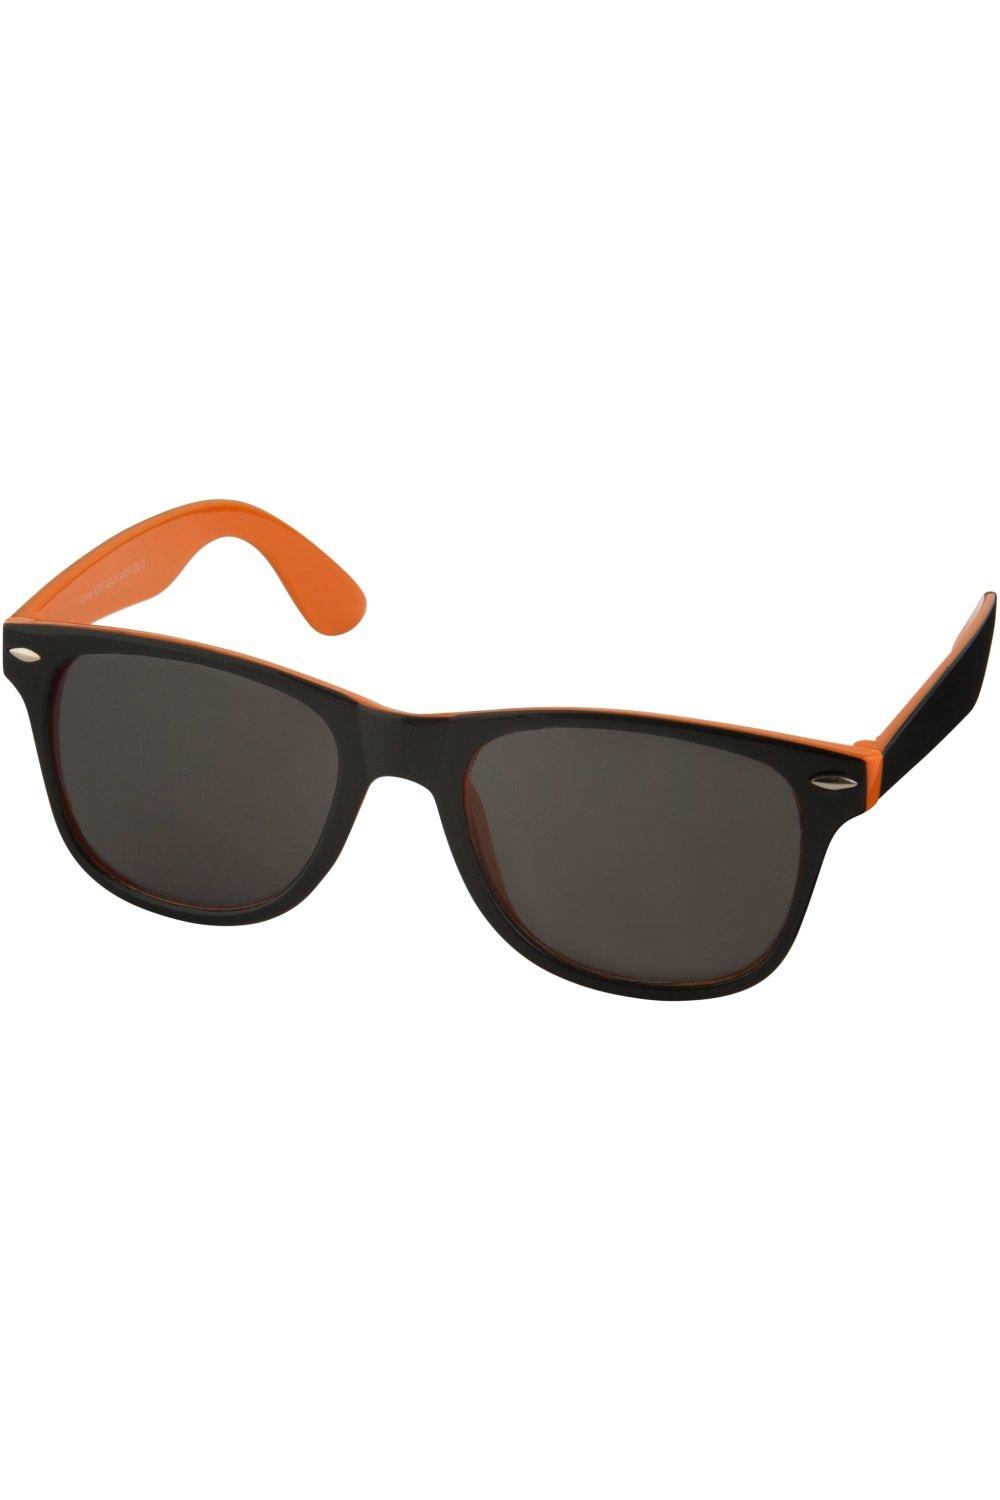 Солнцезащитные очки Sun Ray — черные с яркими акцентами (2 шт. в упаковке) Bullet, оранжевый фотографии